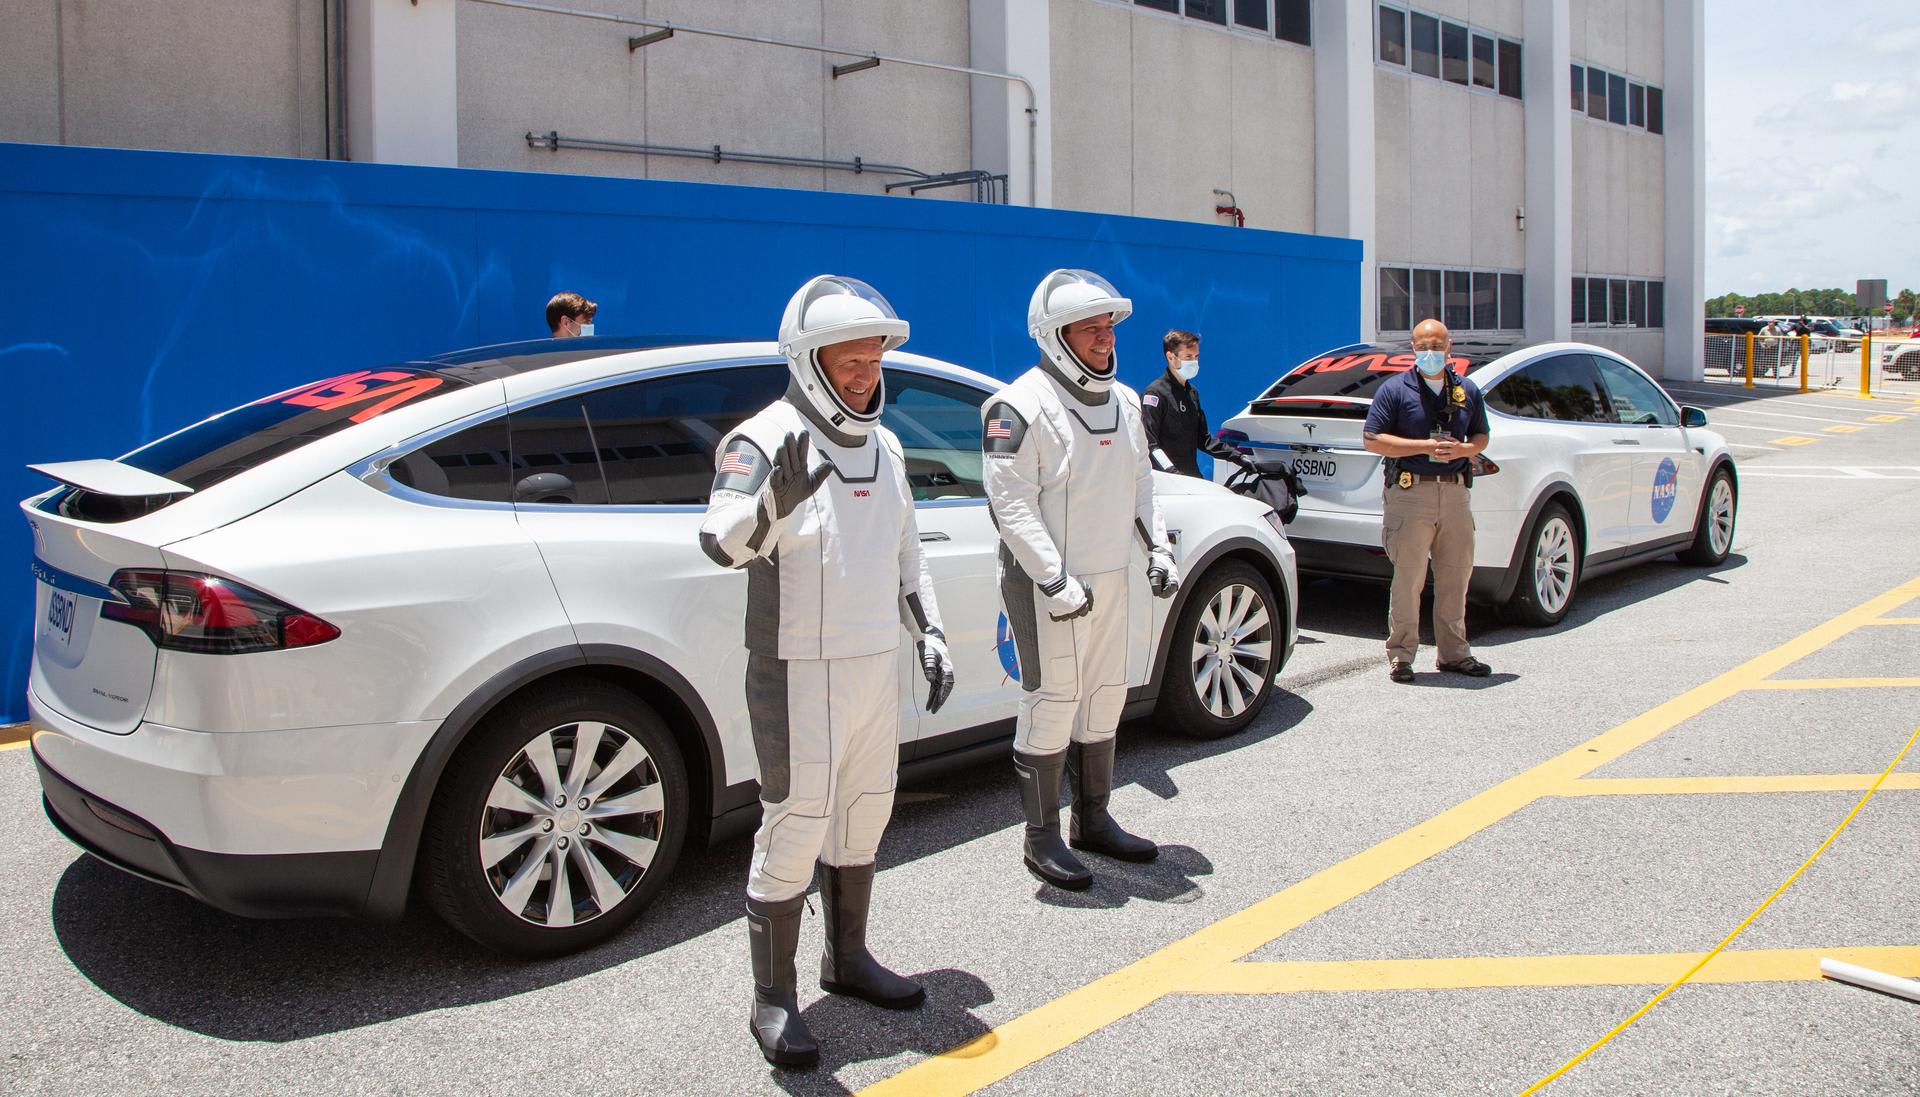 Тесла отправил 20 сотрудников временно работать в SpaceX, чтобы показать